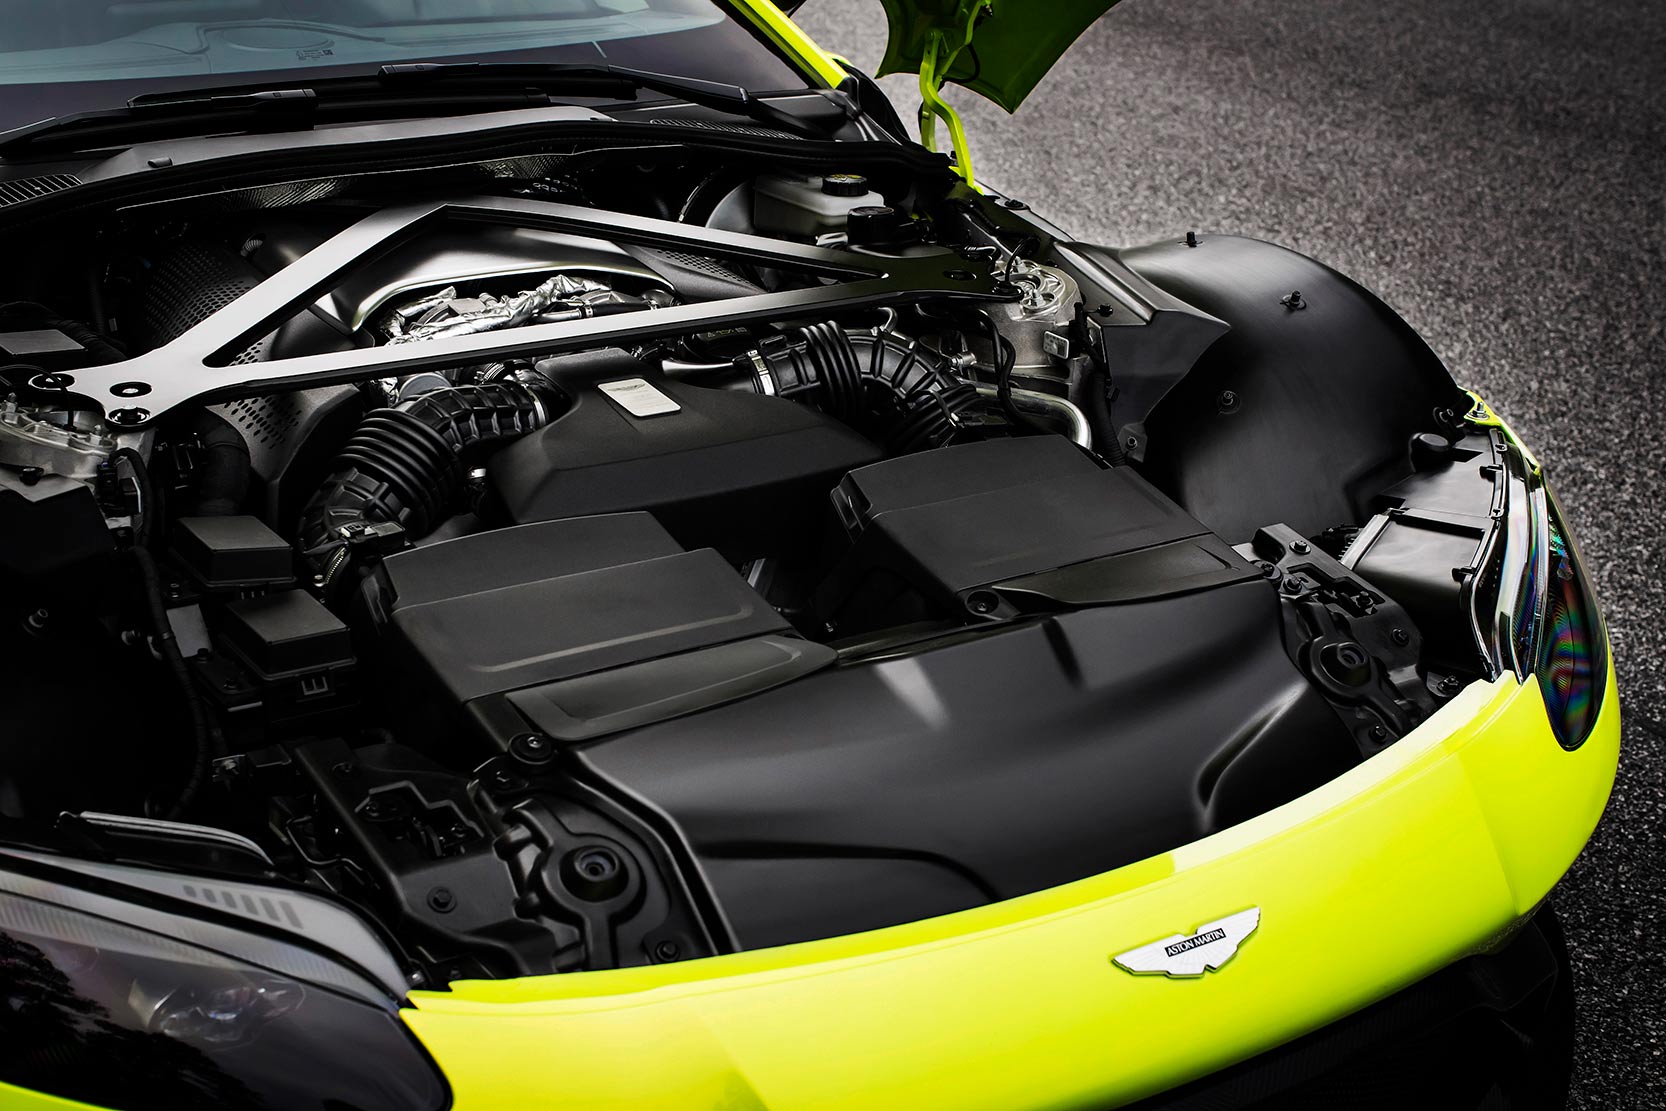 Image principale de l'actu: Aston martin vantage elle n aura jamais de moteur six cylindres 